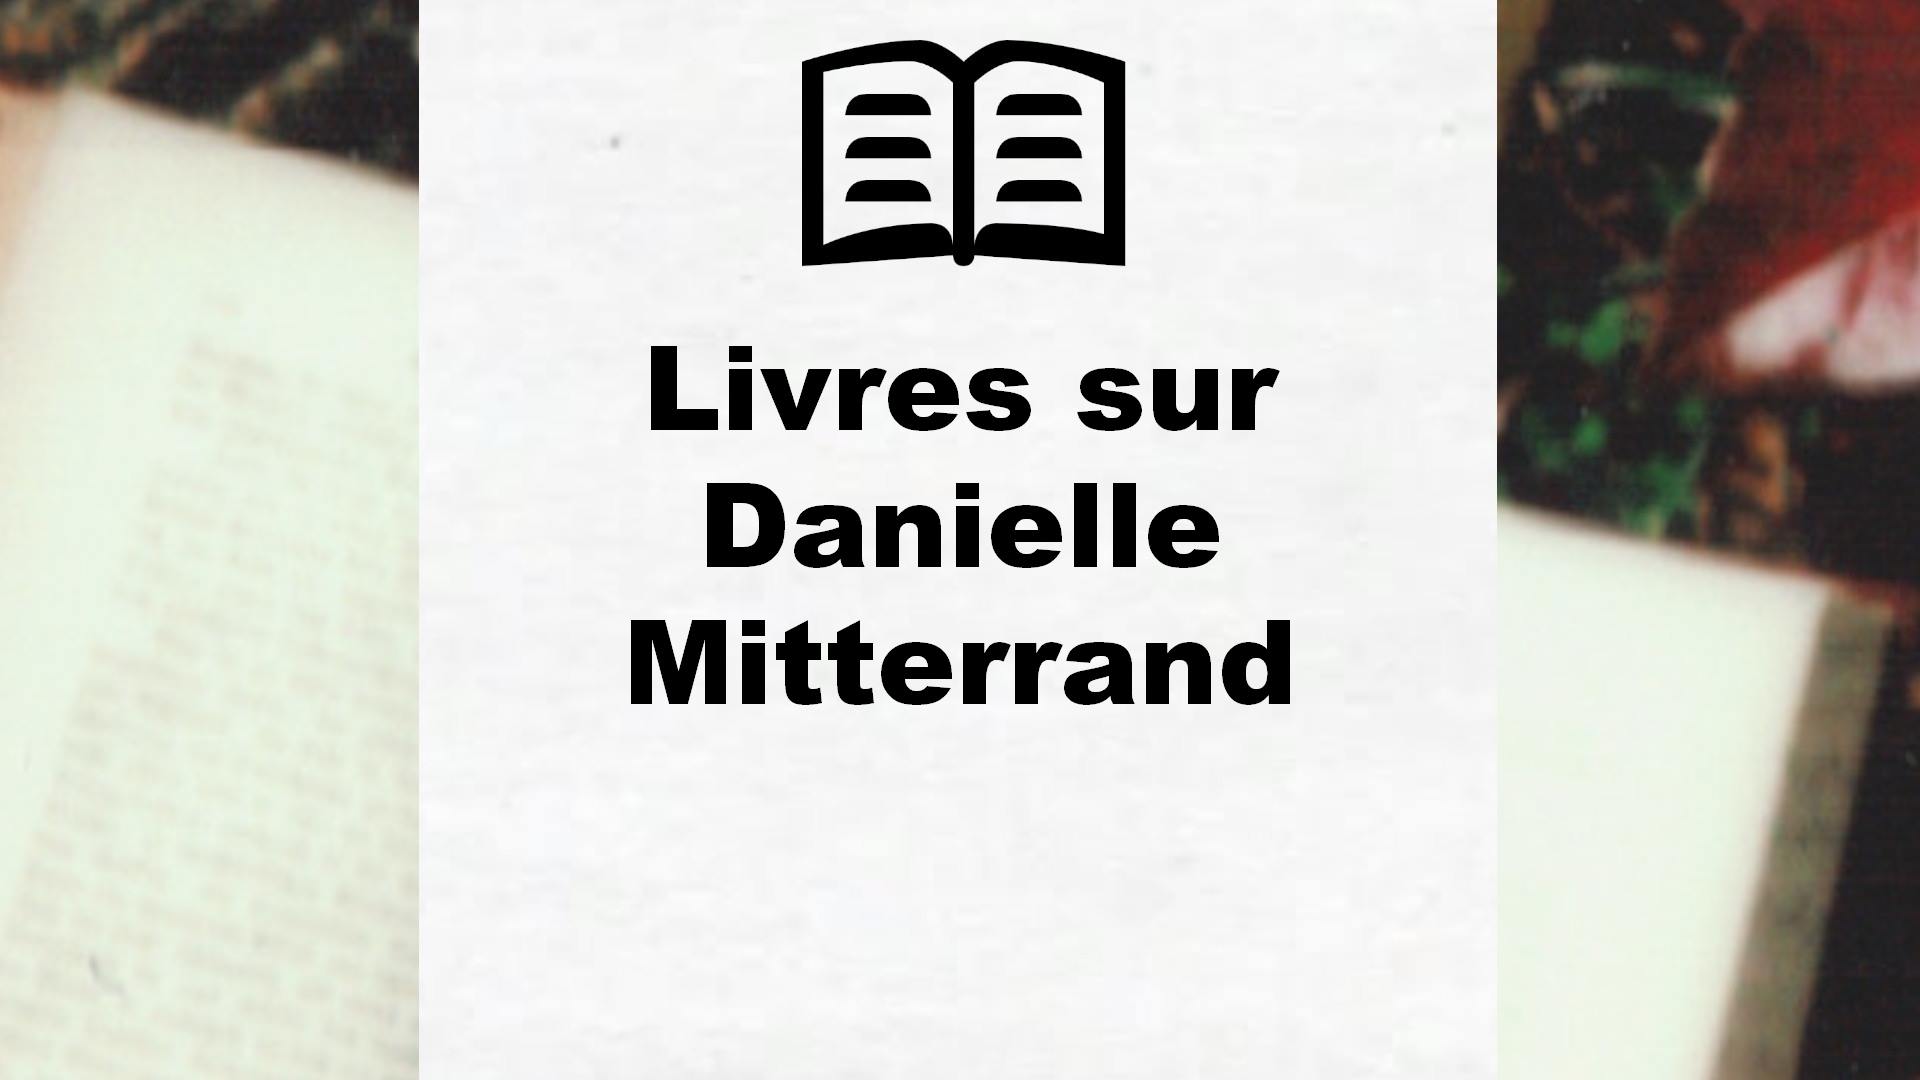 Livres sur Danielle Mitterrand